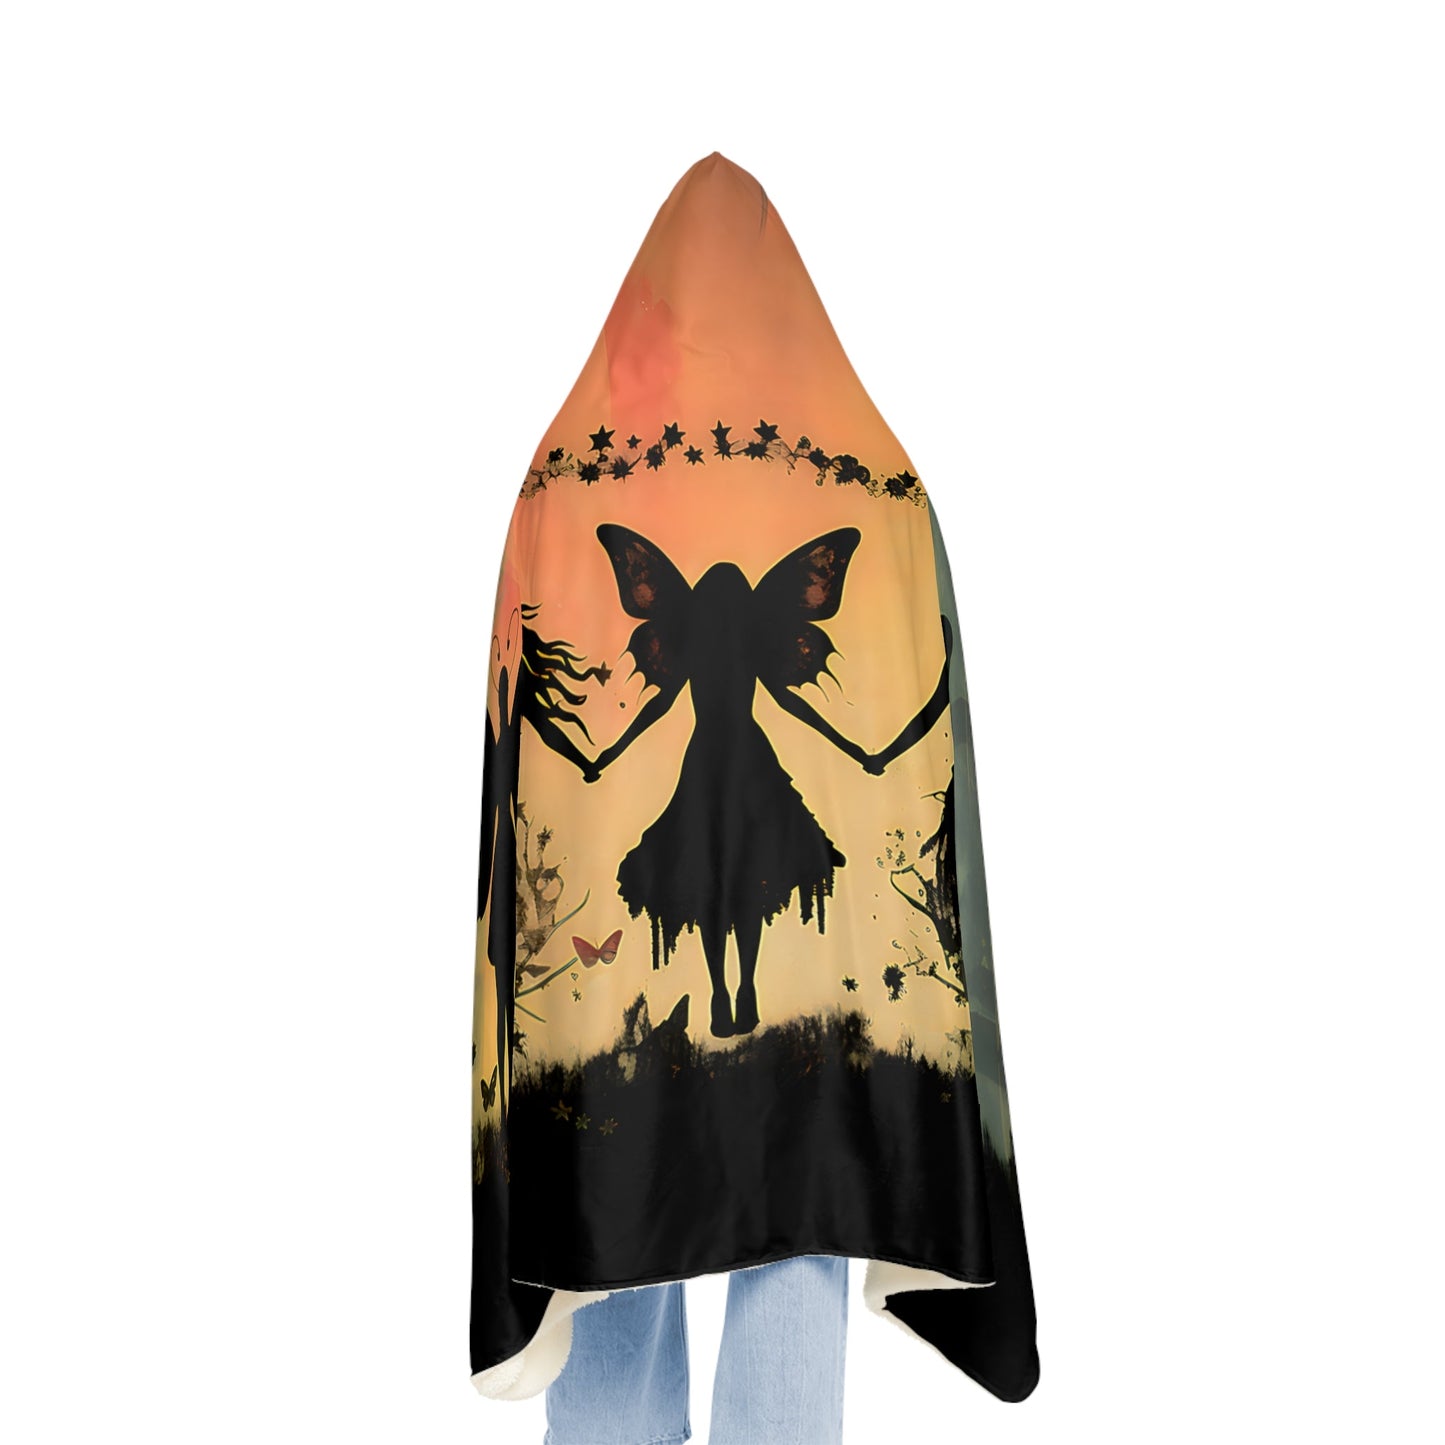 Fairy Grunge Silhouette Hoodie Blanket